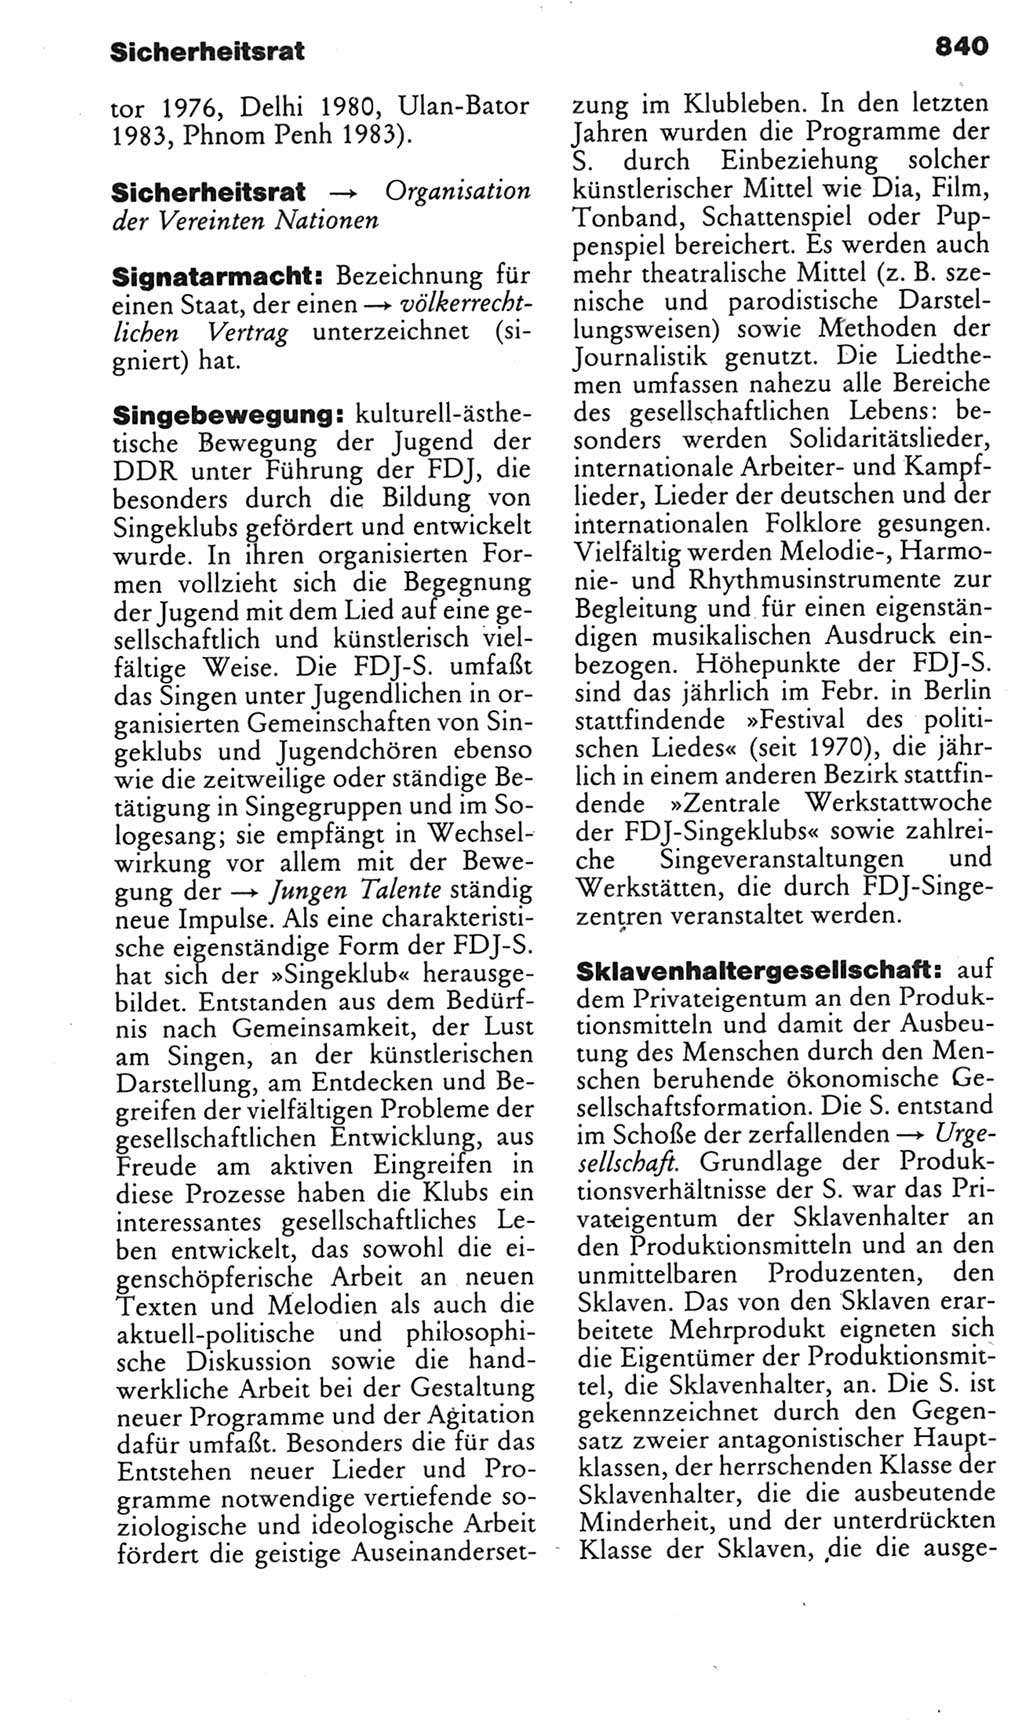 Kleines politisches Wörterbuch [Deutsche Demokratische Republik (DDR)] 1985, Seite 840 (Kl. pol. Wb. DDR 1985, S. 840)